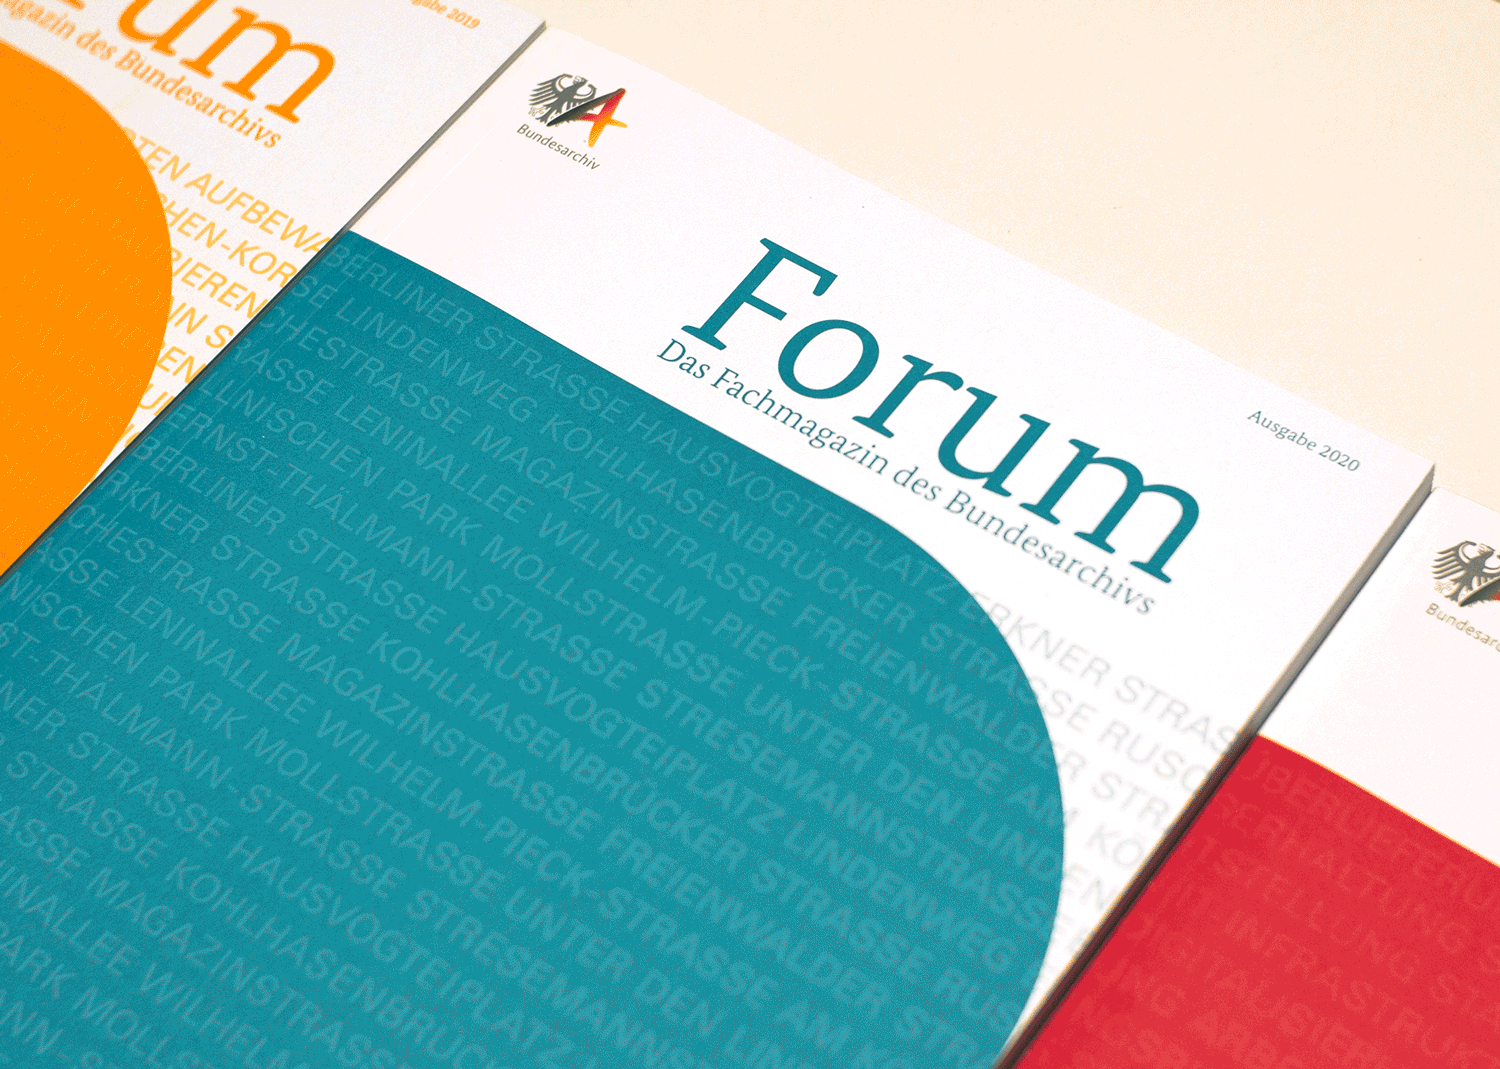 Bundesarchiv – Magazin Forum 2020